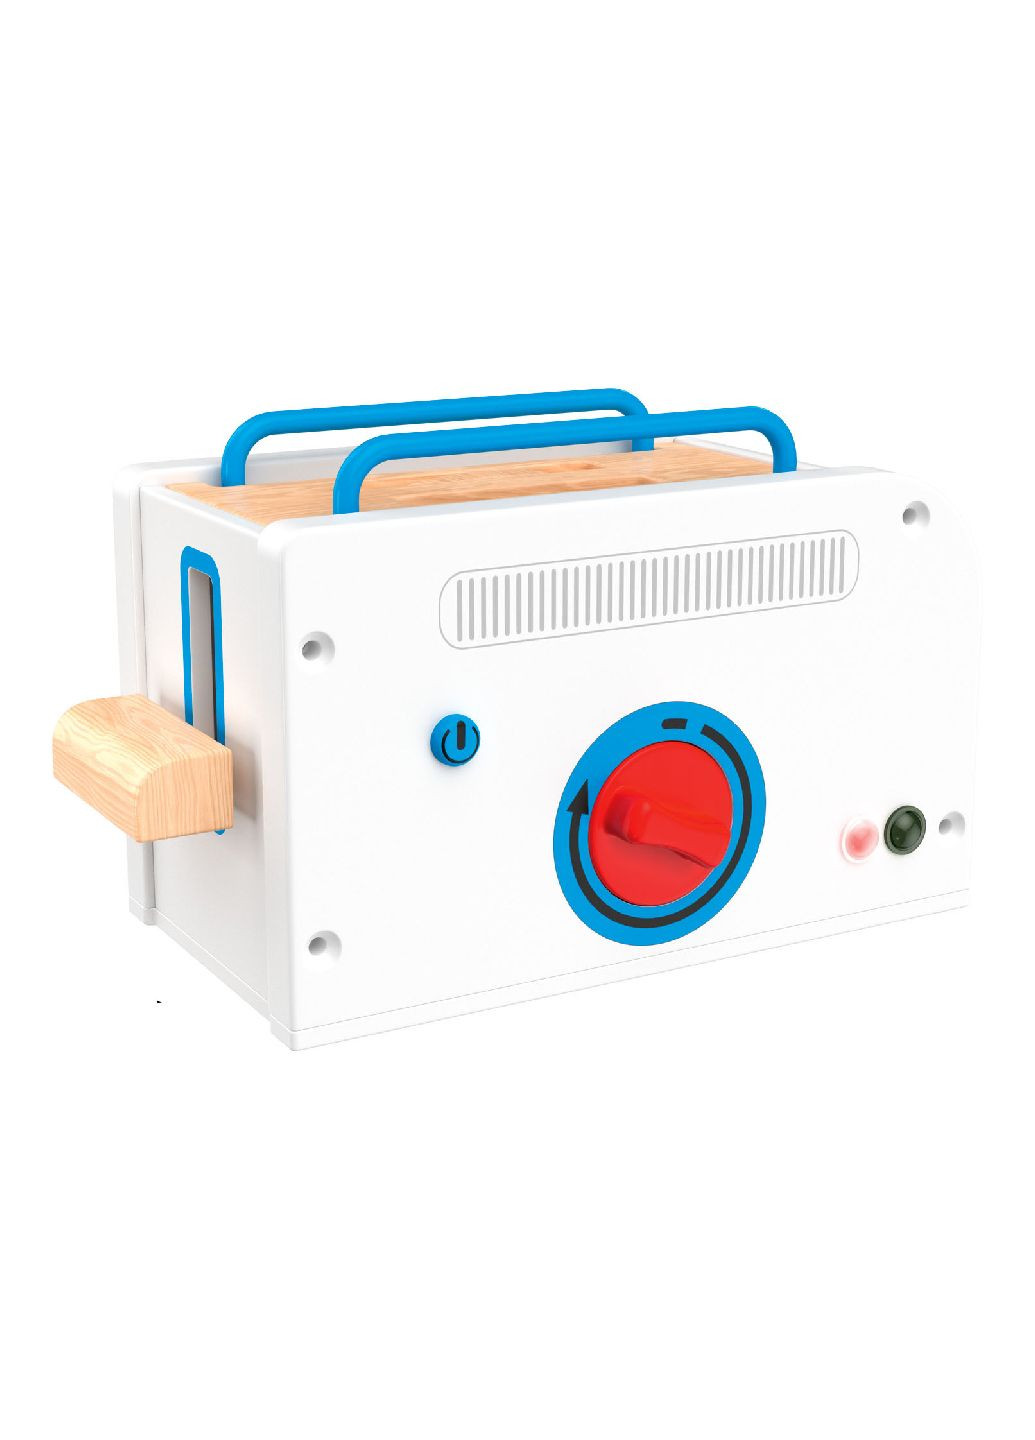 Игрушка тостер со световым и звуковым сопровождением комбинированный Lidl Playtive (293970290)